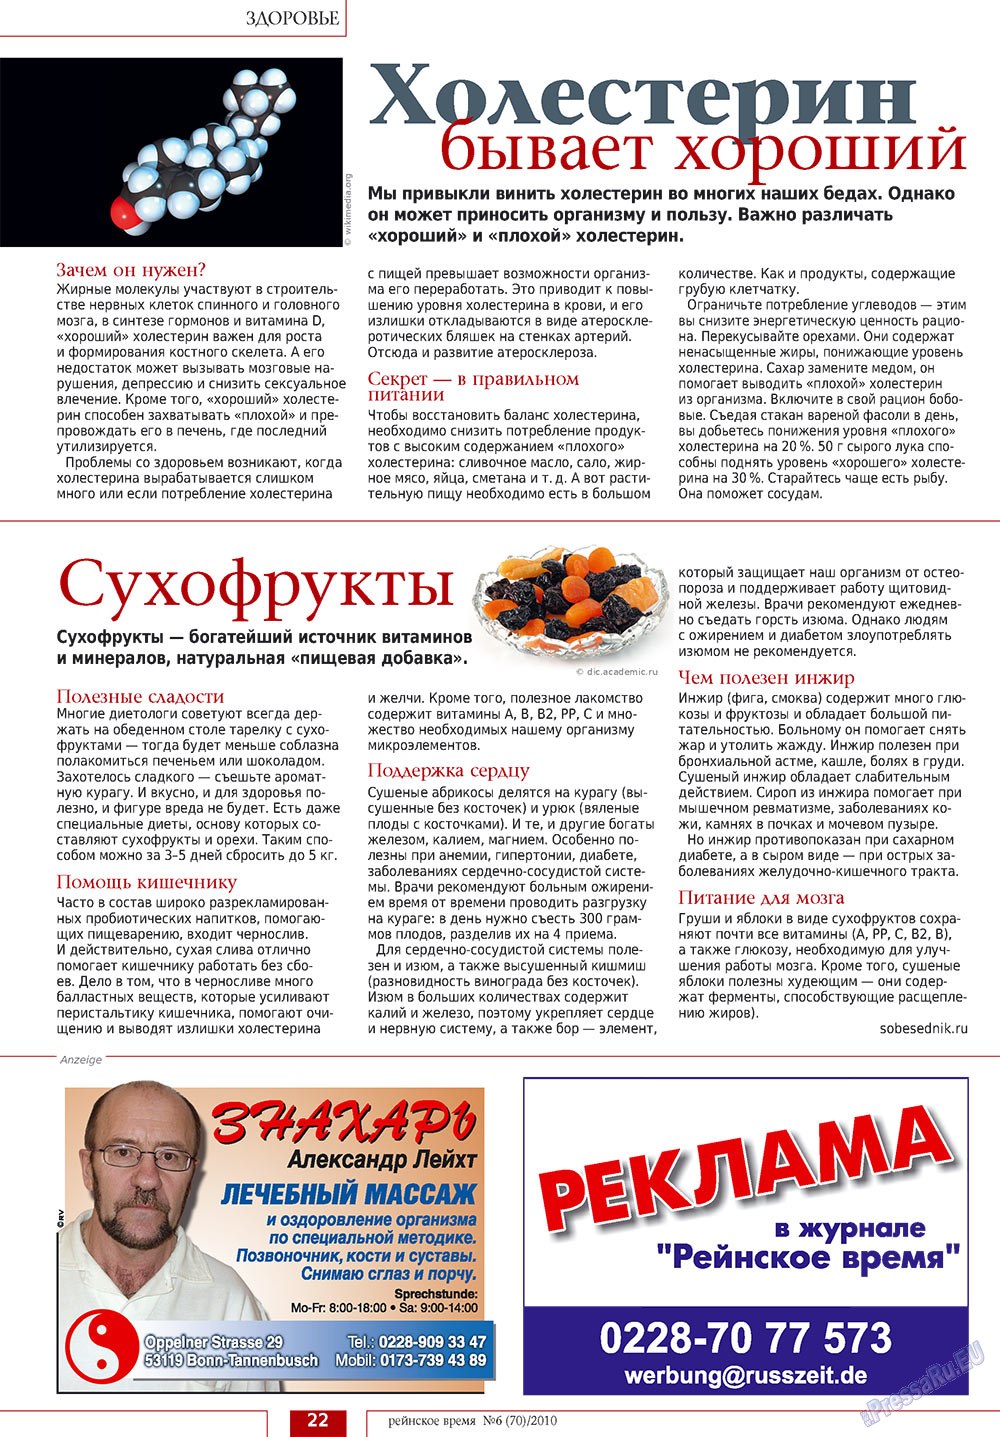 Rejnskoe vremja (Zeitschrift). 2010 Jahr, Ausgabe 6, Seite 22